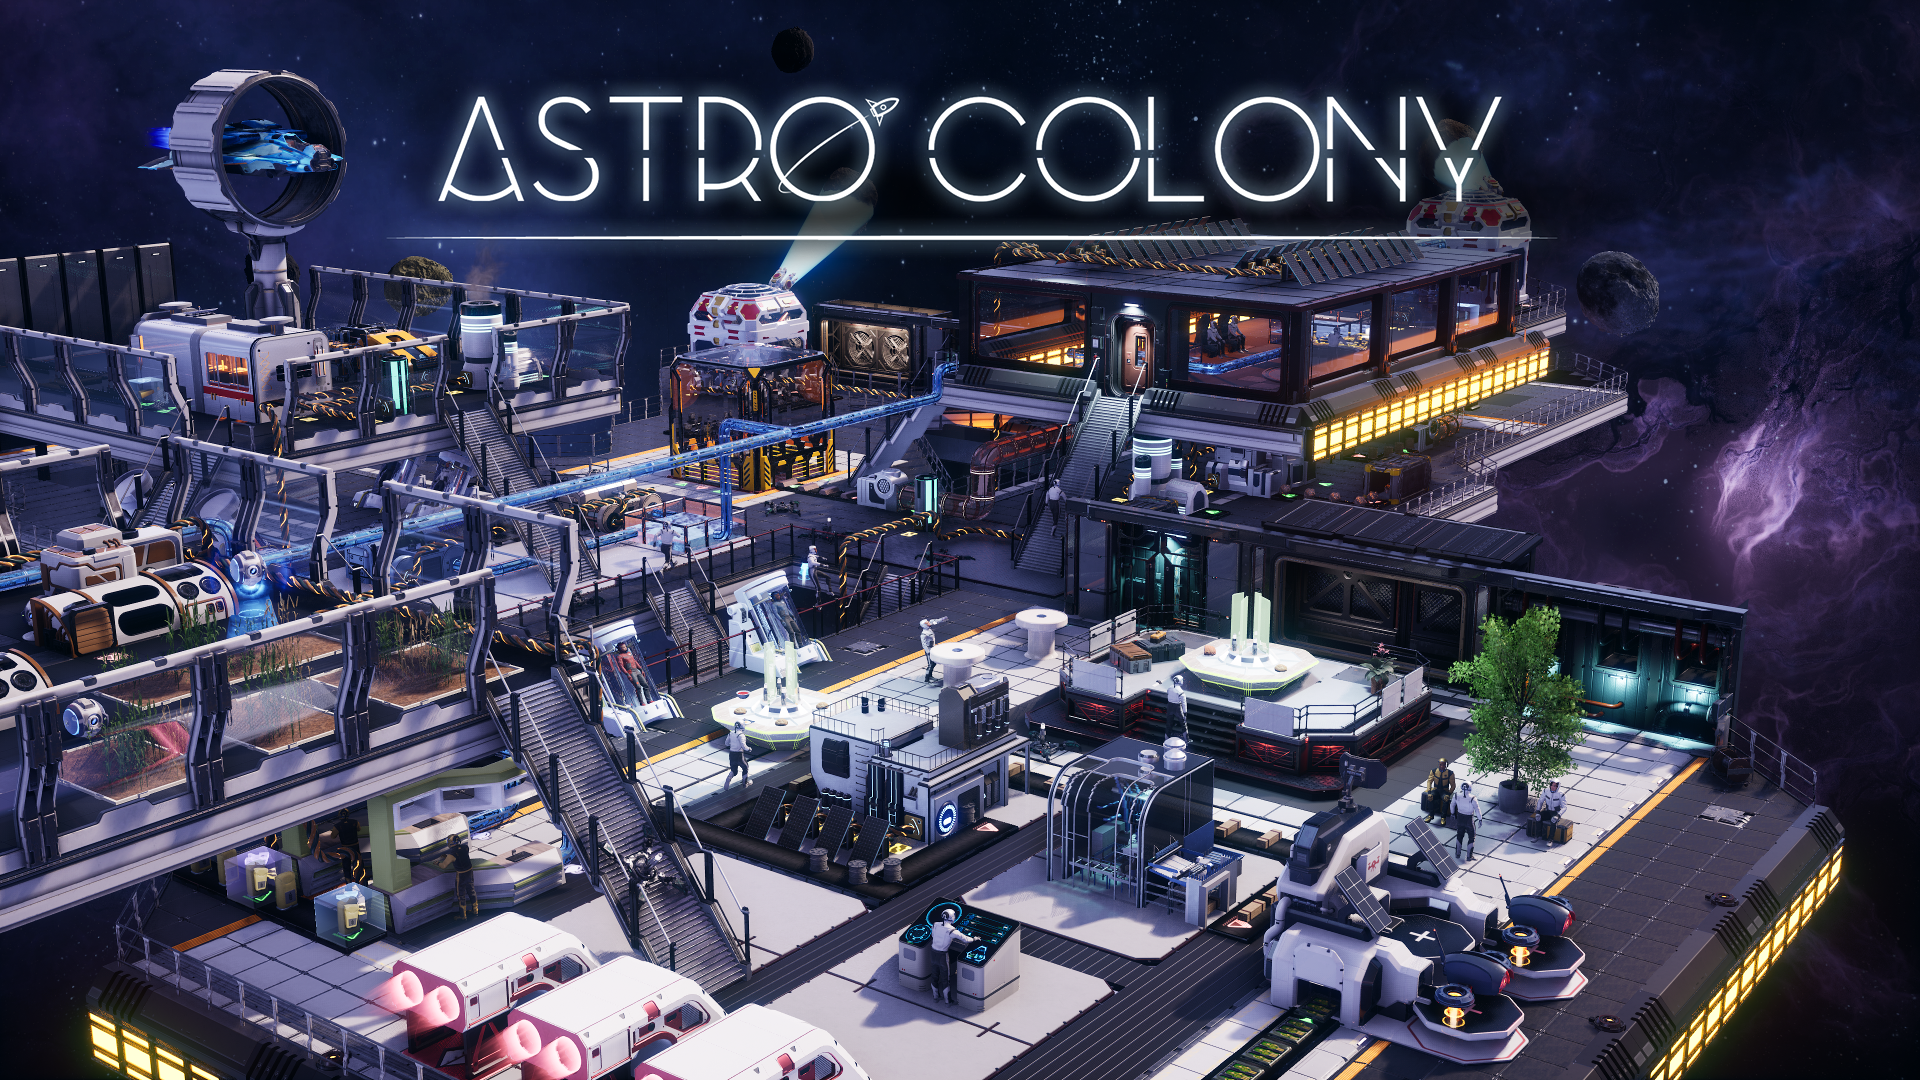 Astro Colony